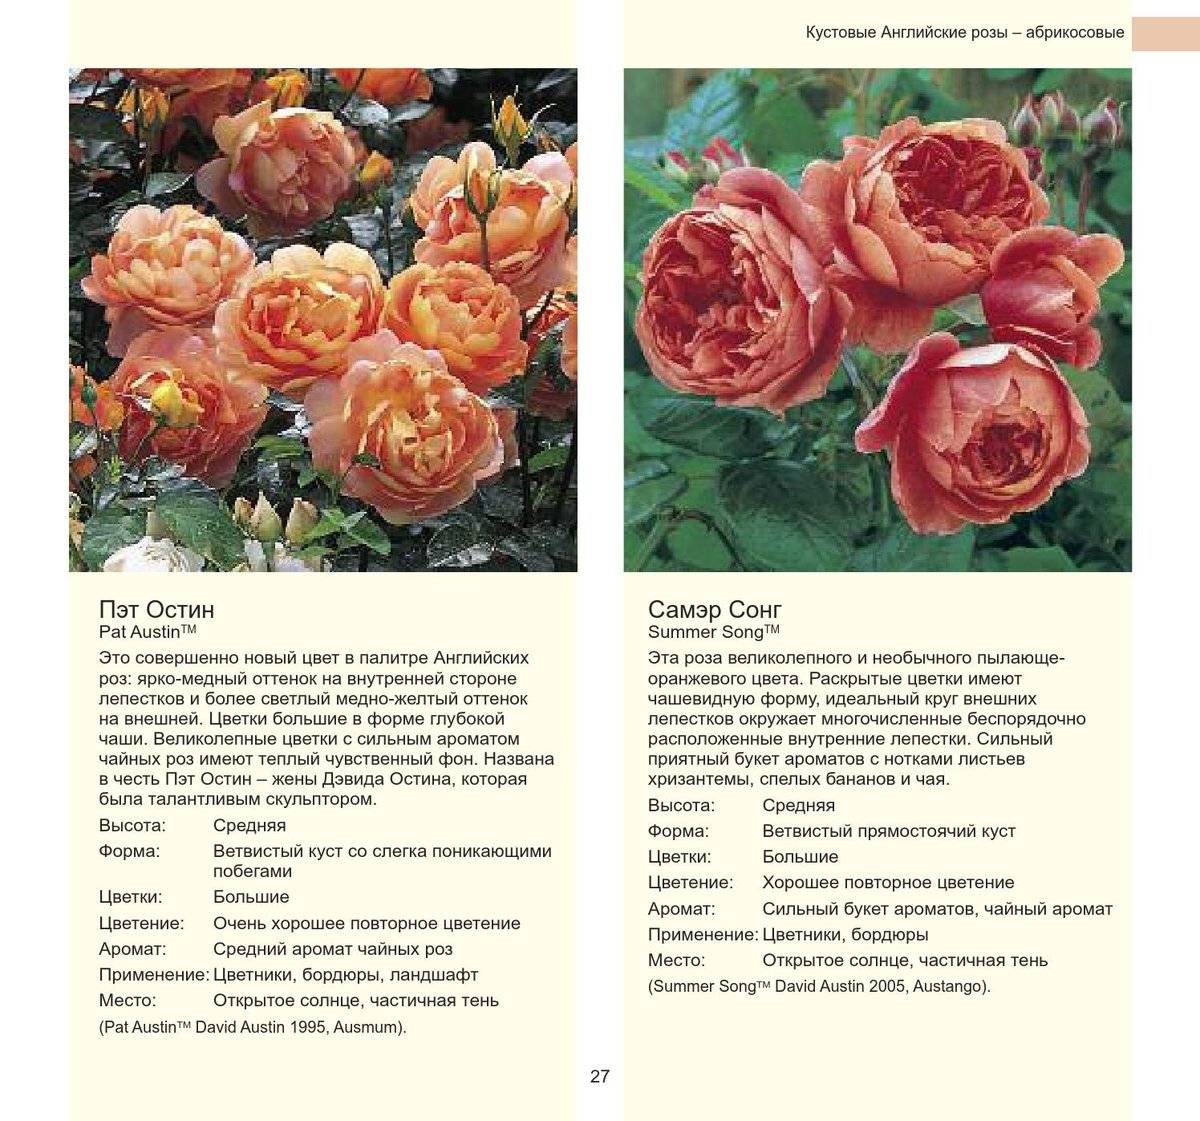 Роза аква: описание и фото сорта, цветение и использование в ландшафтном дизайне, пошаговая инструкция по выращиванию и размножению, болезни и вредителидача эксперт